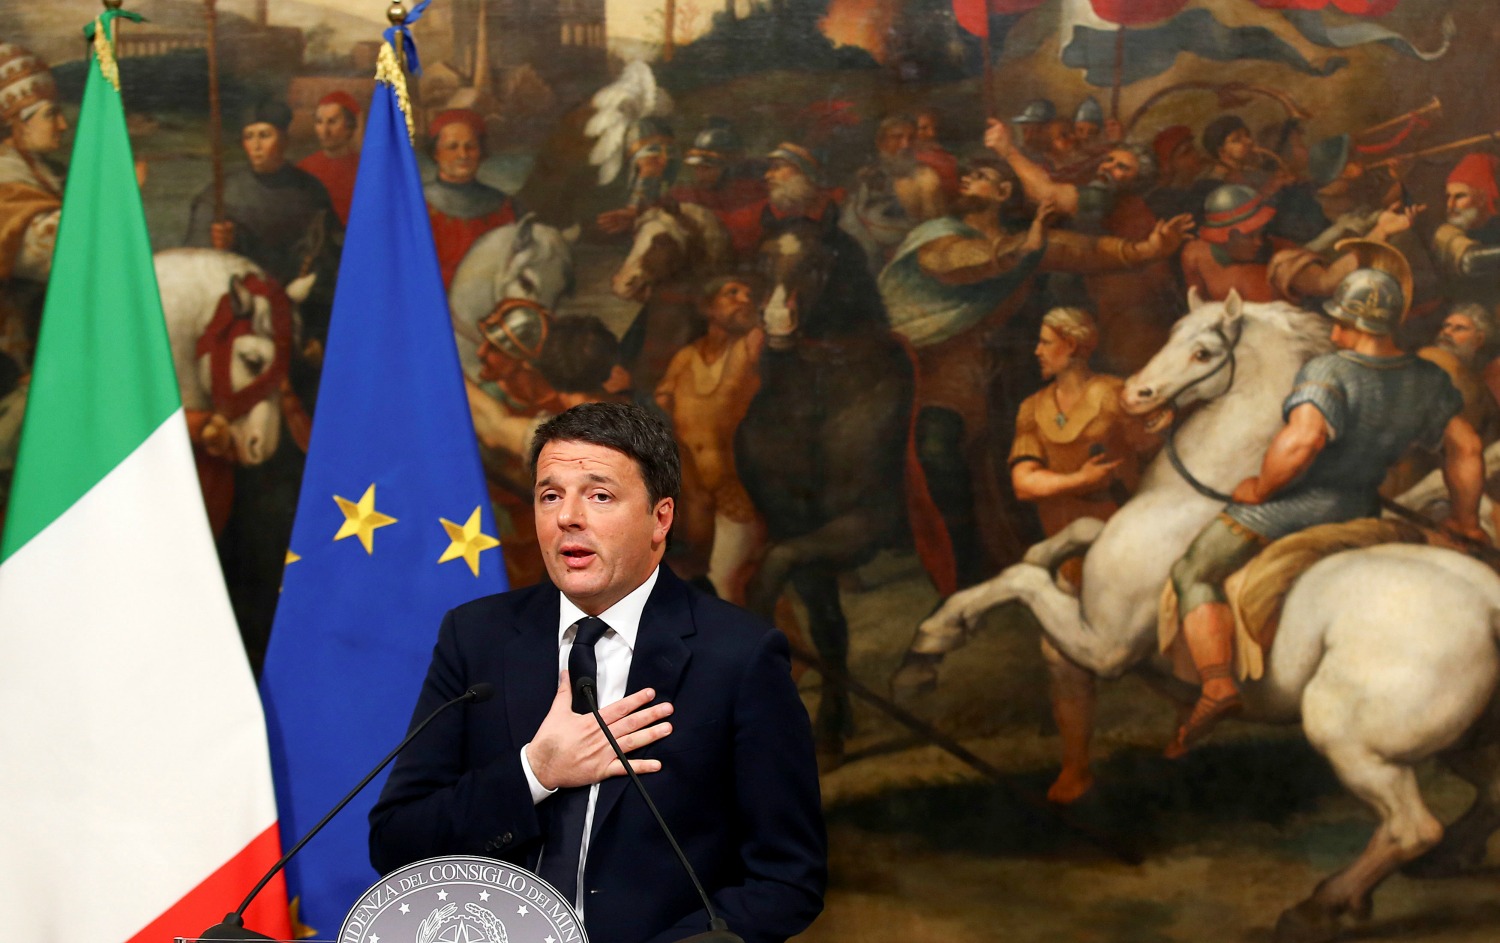 Renzi formaliza su renuncia como primer ministro italiano tras aprobarse los presupuestos